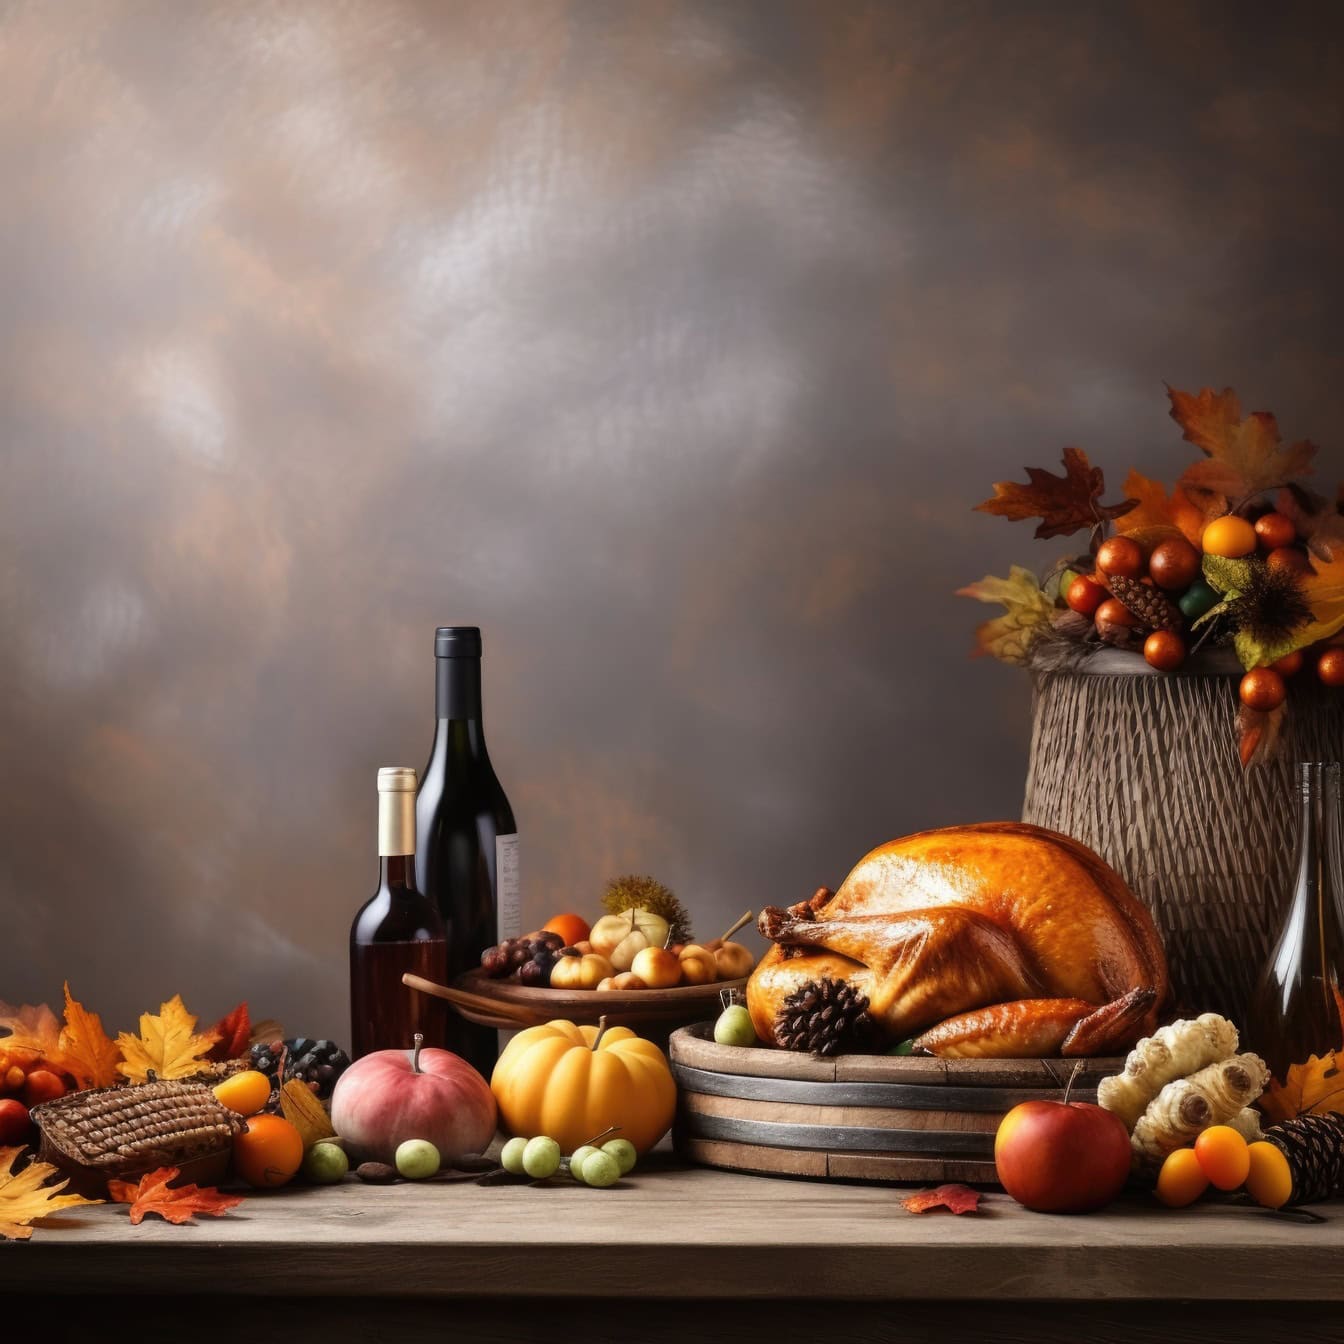 Lijst met voedsel en wijnflessen, een illustratie van het dankzeggingsdiner